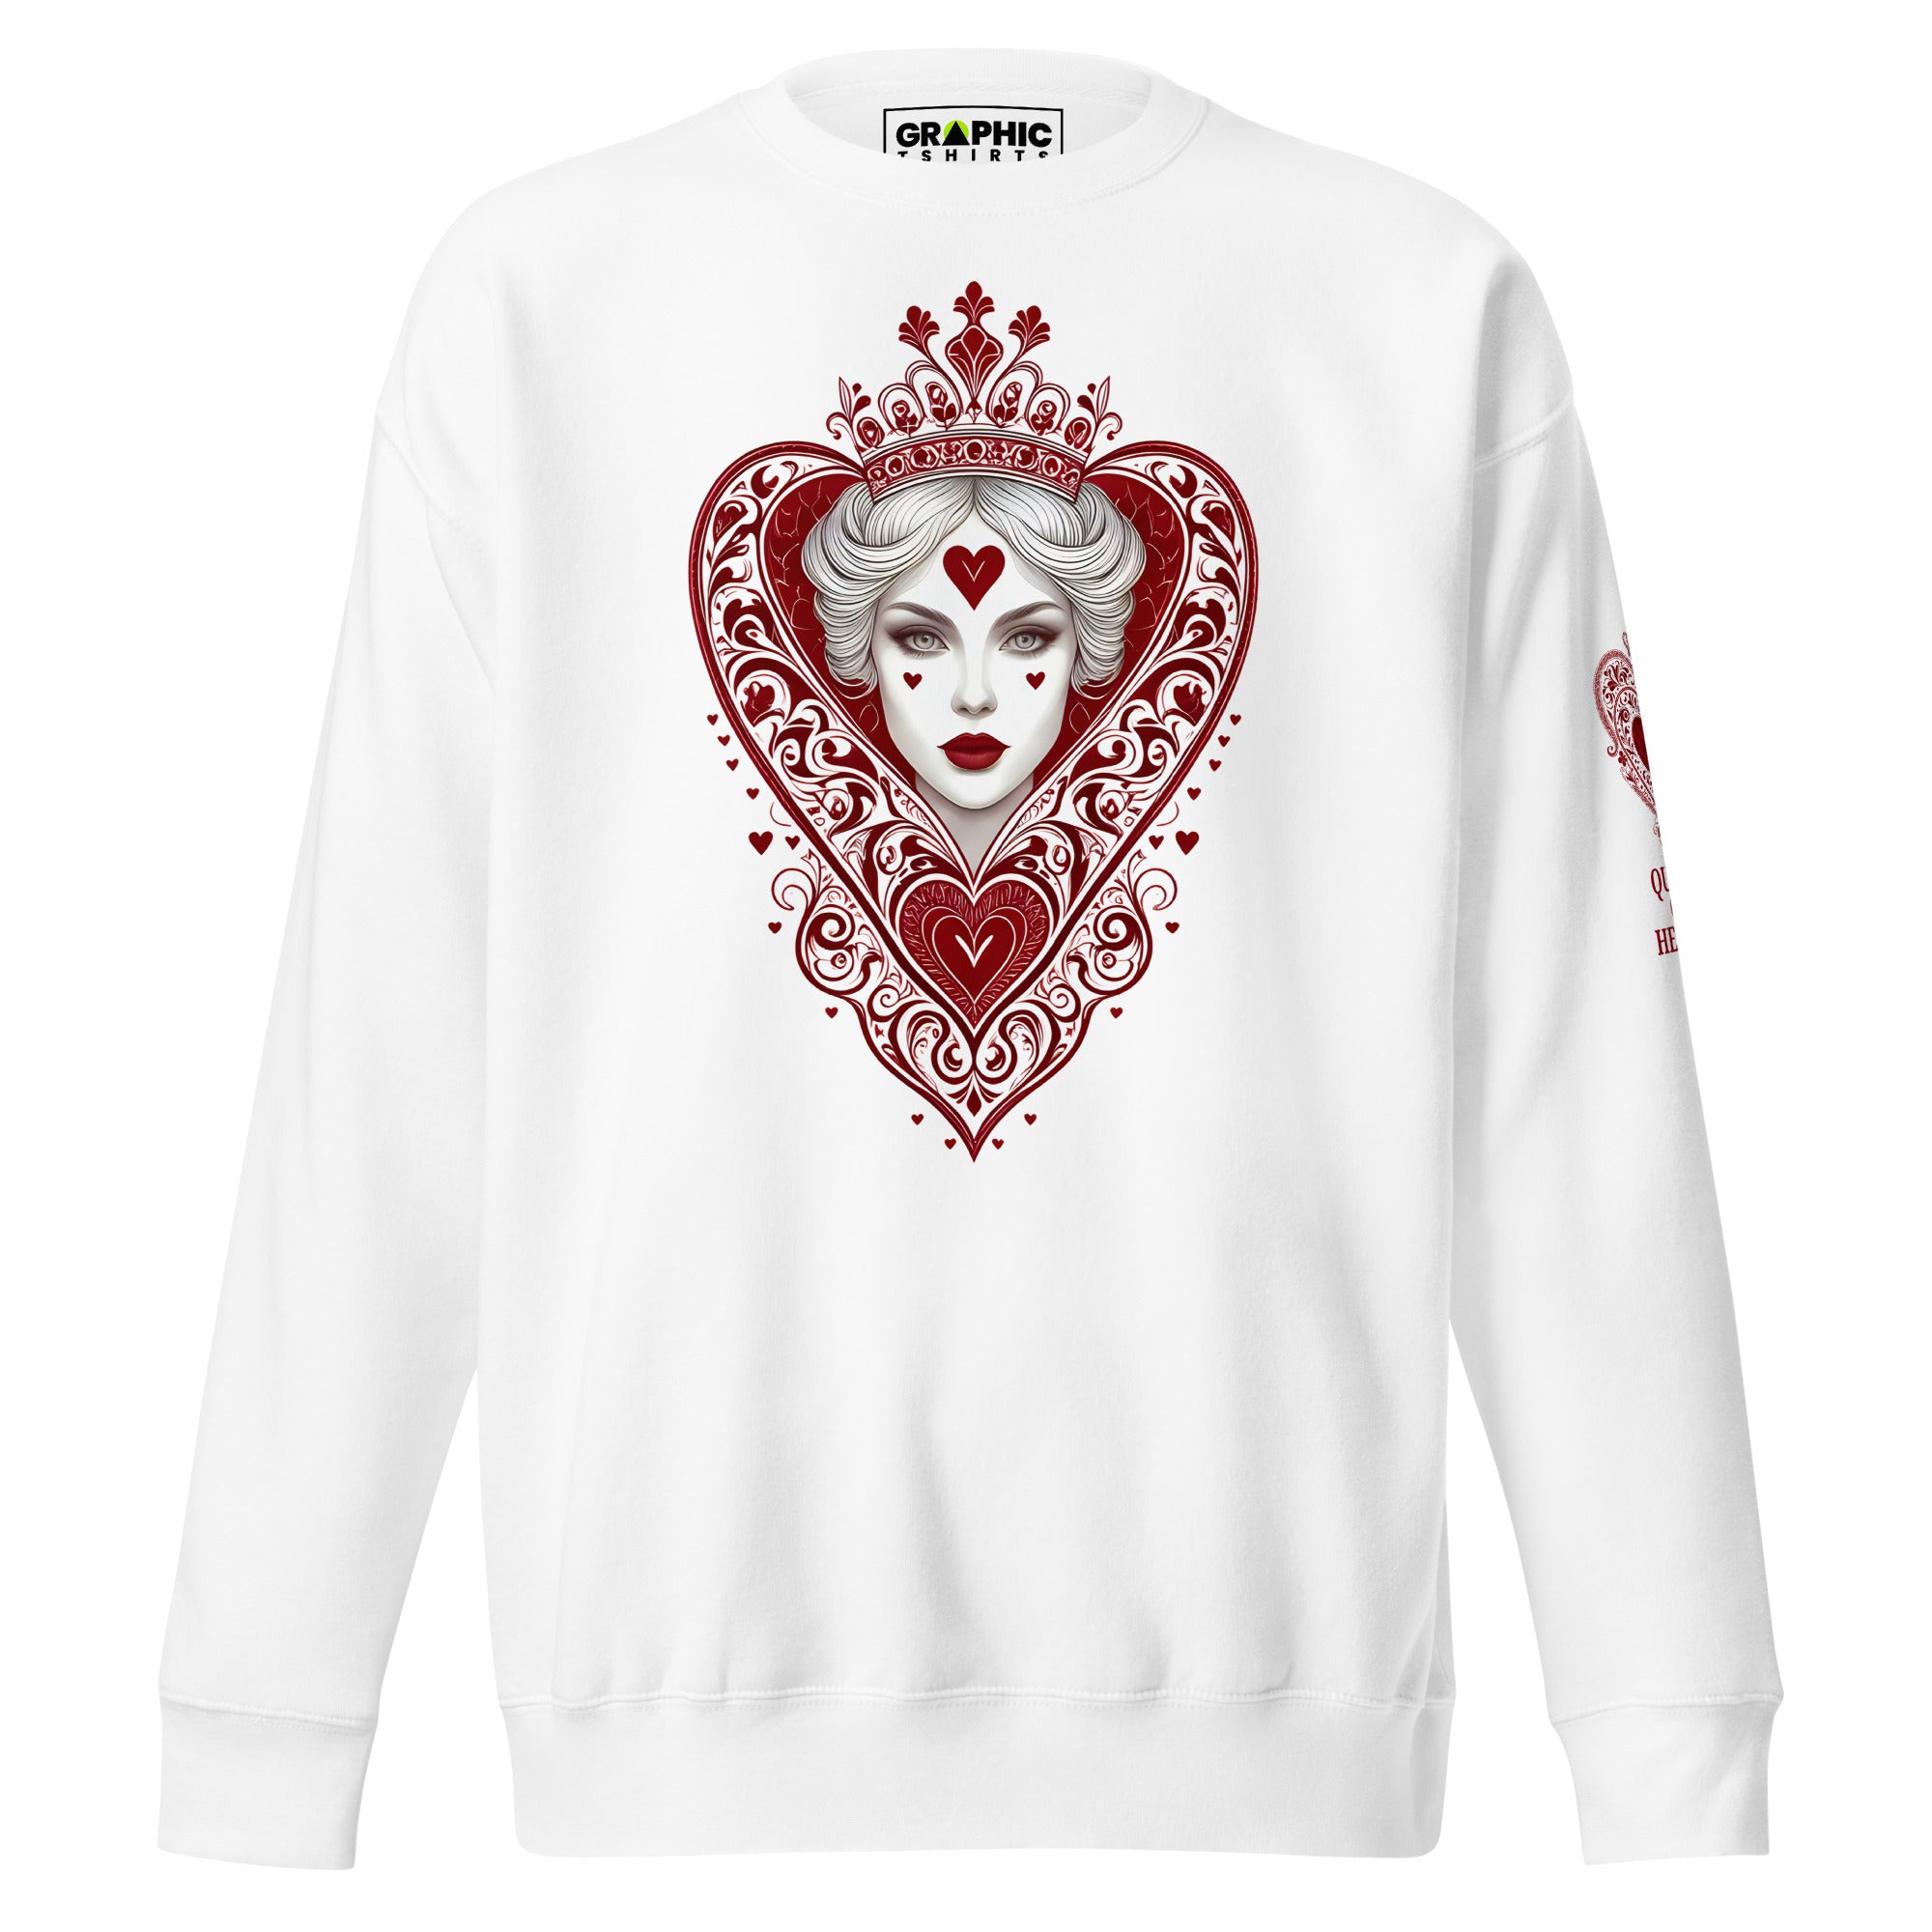 Unisex Premium Sweatshirt - Queen Of Hearts Series v.36